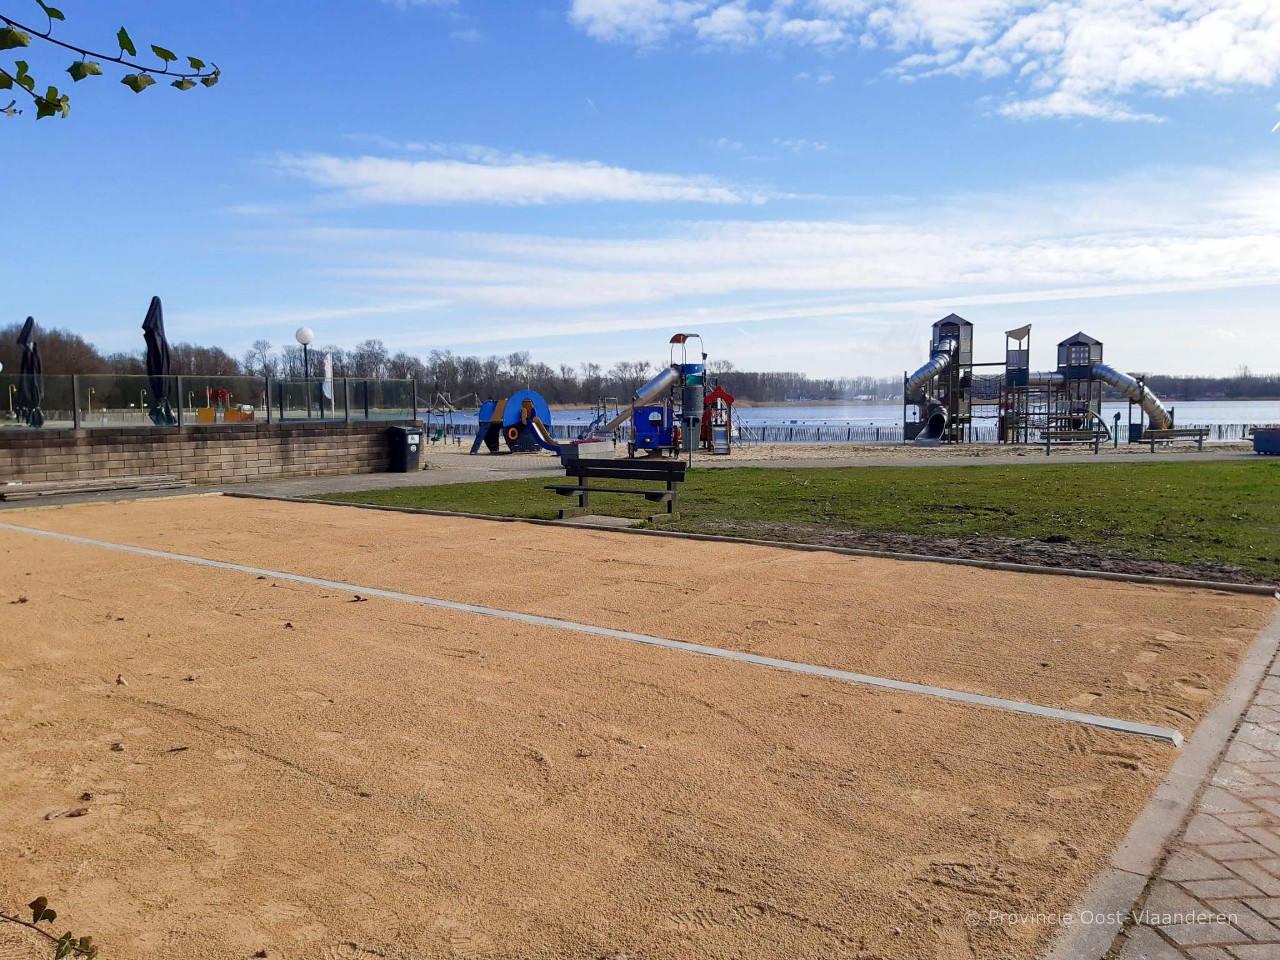 Petanquebanen in nieuwdonk naast het terras met uitzicht op het speelplein